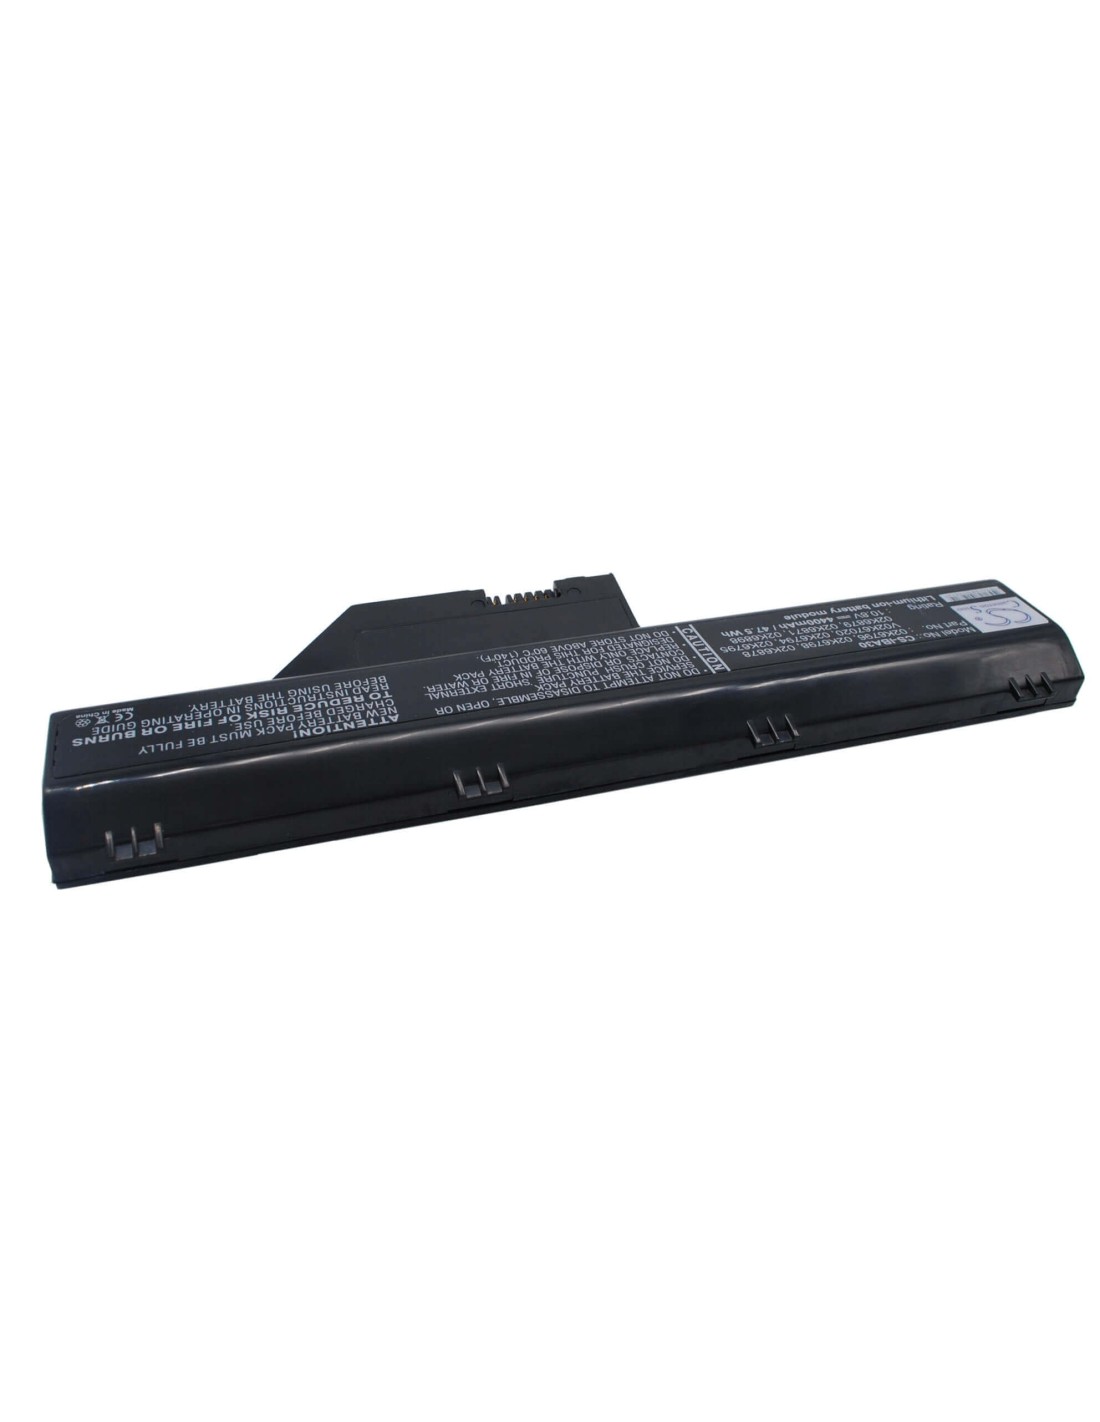 Black Battery for Ibm Thinkpad A30, Thinkpad A30p, Thinkpad A31 10.8V, 4400mAh - 47.52Wh